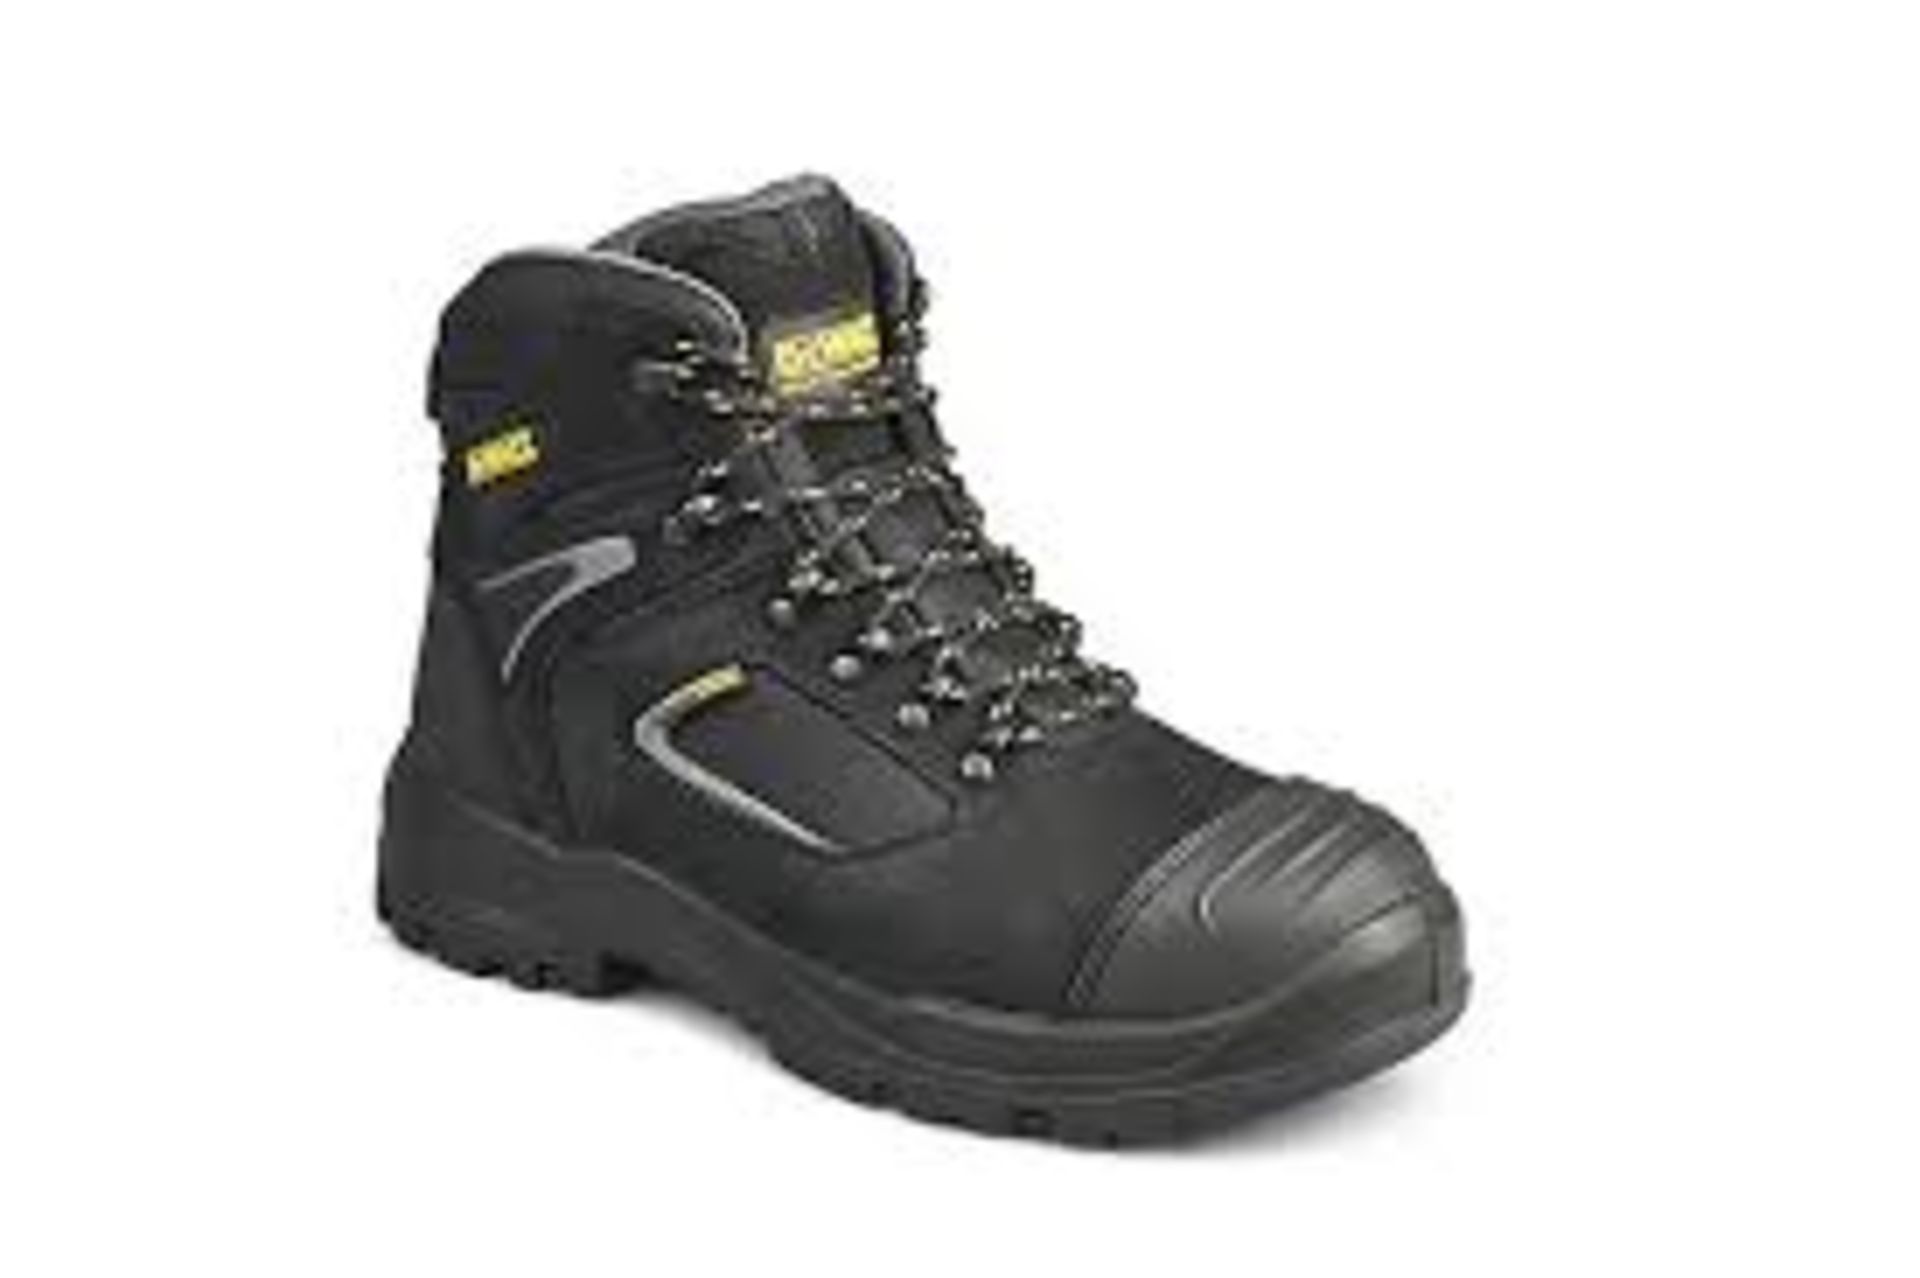 DeWalt Dover Black Hiker boots, Size 10. - ER47. The Dewalt Dover waterproof men's leather safety